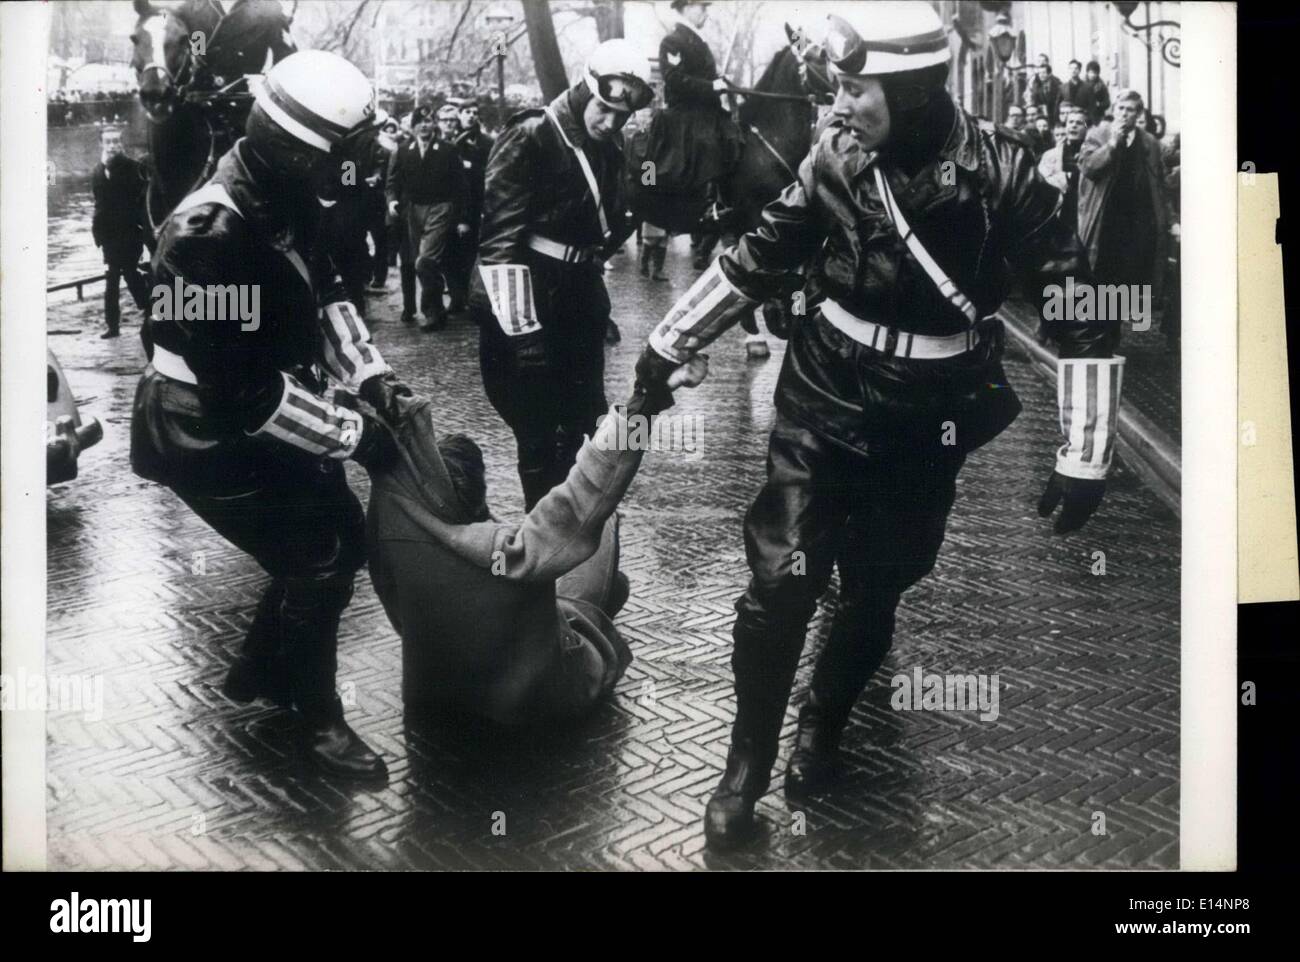 9. April 2012 - gestern gab es Vorfälle während der Braut Teil des königlichen Brautpaares, Prinzessin Beatrix der Niederlande und Prinz Claus Von Amsberg, durch die Straßen von Amsterdam vorbeiging. Die Demonstranten wurden von der Polizei mit Tränengas aufgelöst. Einige wurden gewaltsam festgenommen. Hier ist ein Bild von ein Demonstrant, indem er sich Drogen entlang von zwei Polizisten zu sein. Stockfoto